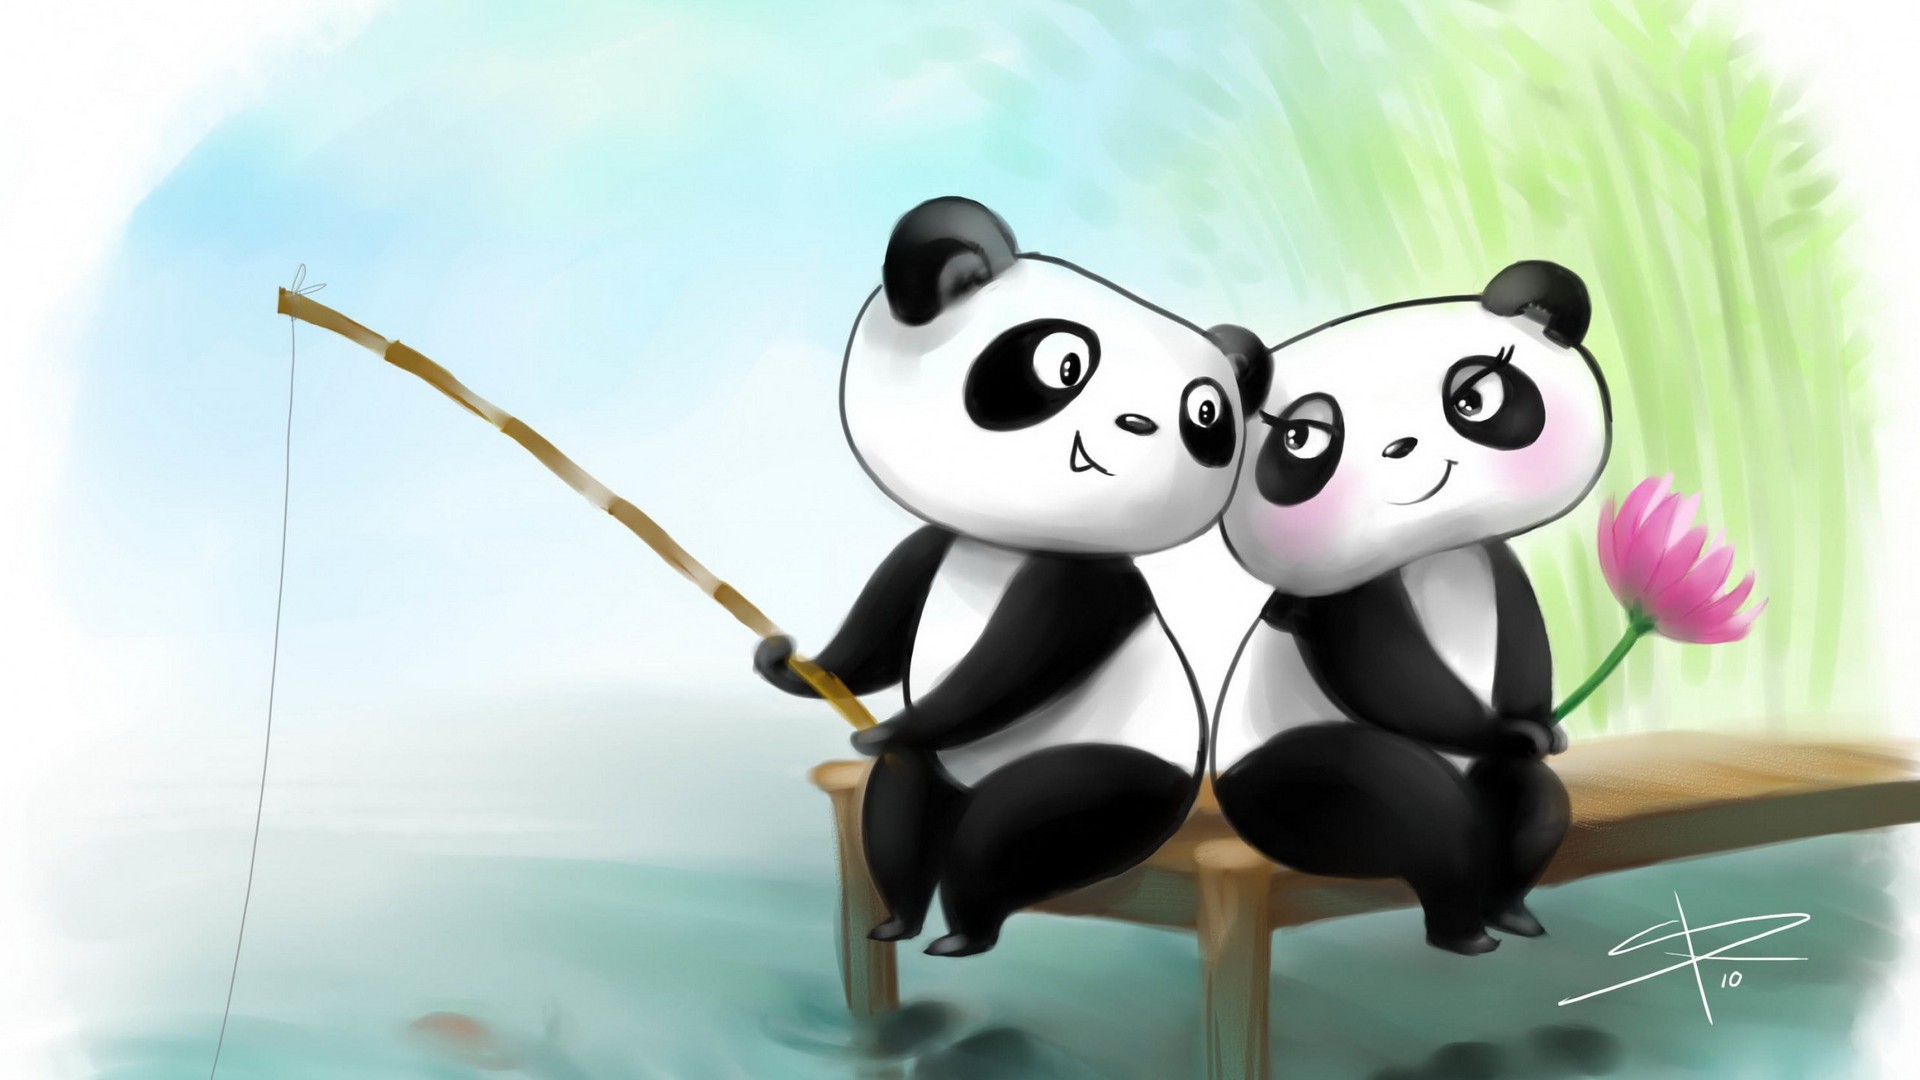 Cute Couple Panda Wallpaper - Cute Panda Couple Cartoon - 1920x1080  Wallpaper 